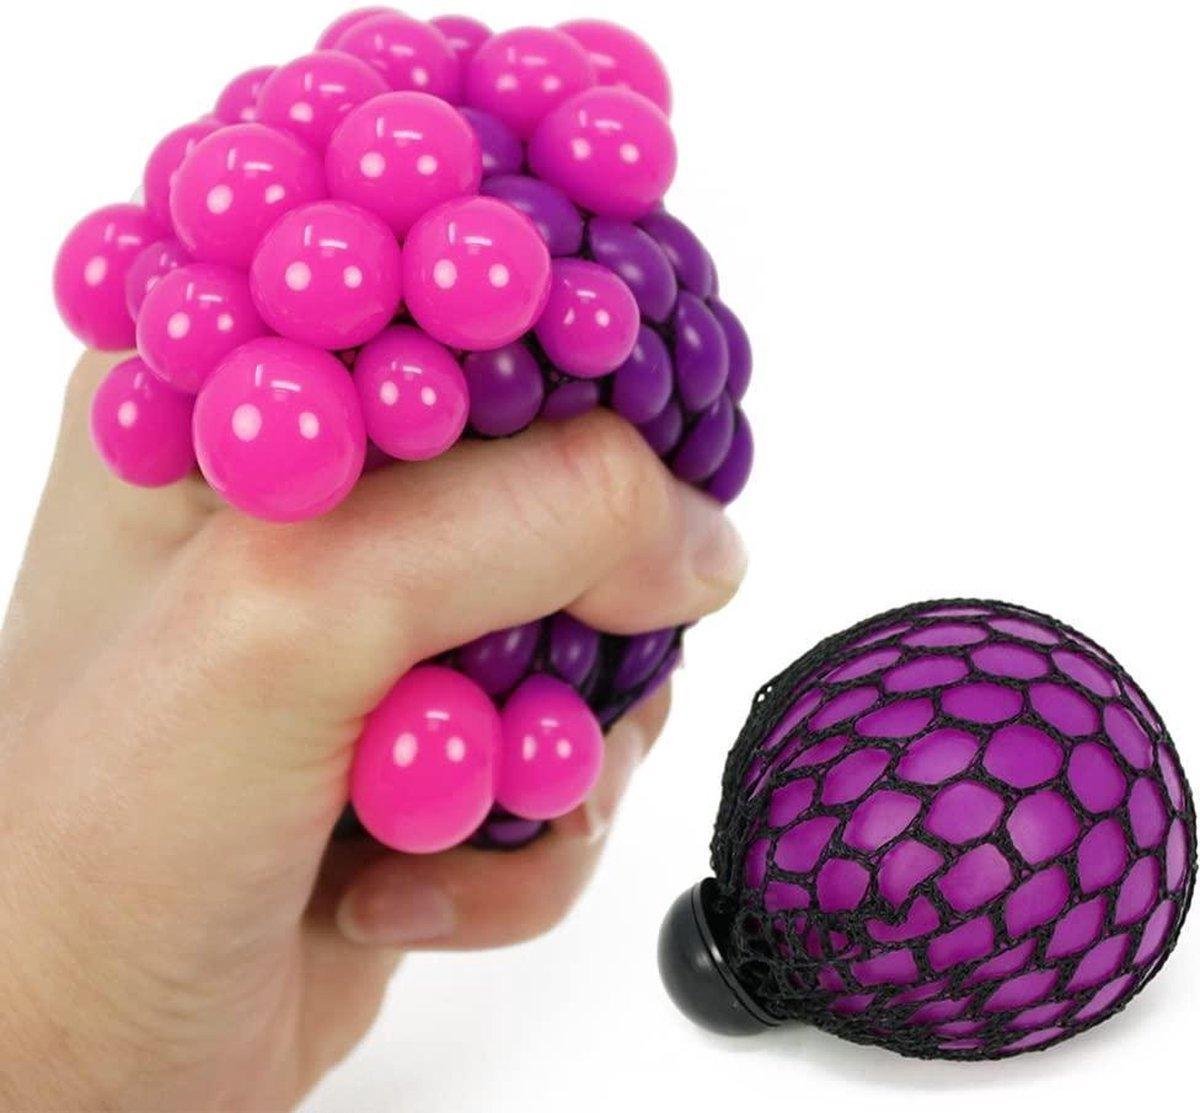 Balle anti-stress / Worry pet / Crochet boule d'anxiété / Squishy fidget  ball / Copain de balle anti-stress fait à la main / Fidget toy NOUVELLES  COULEURS -  France